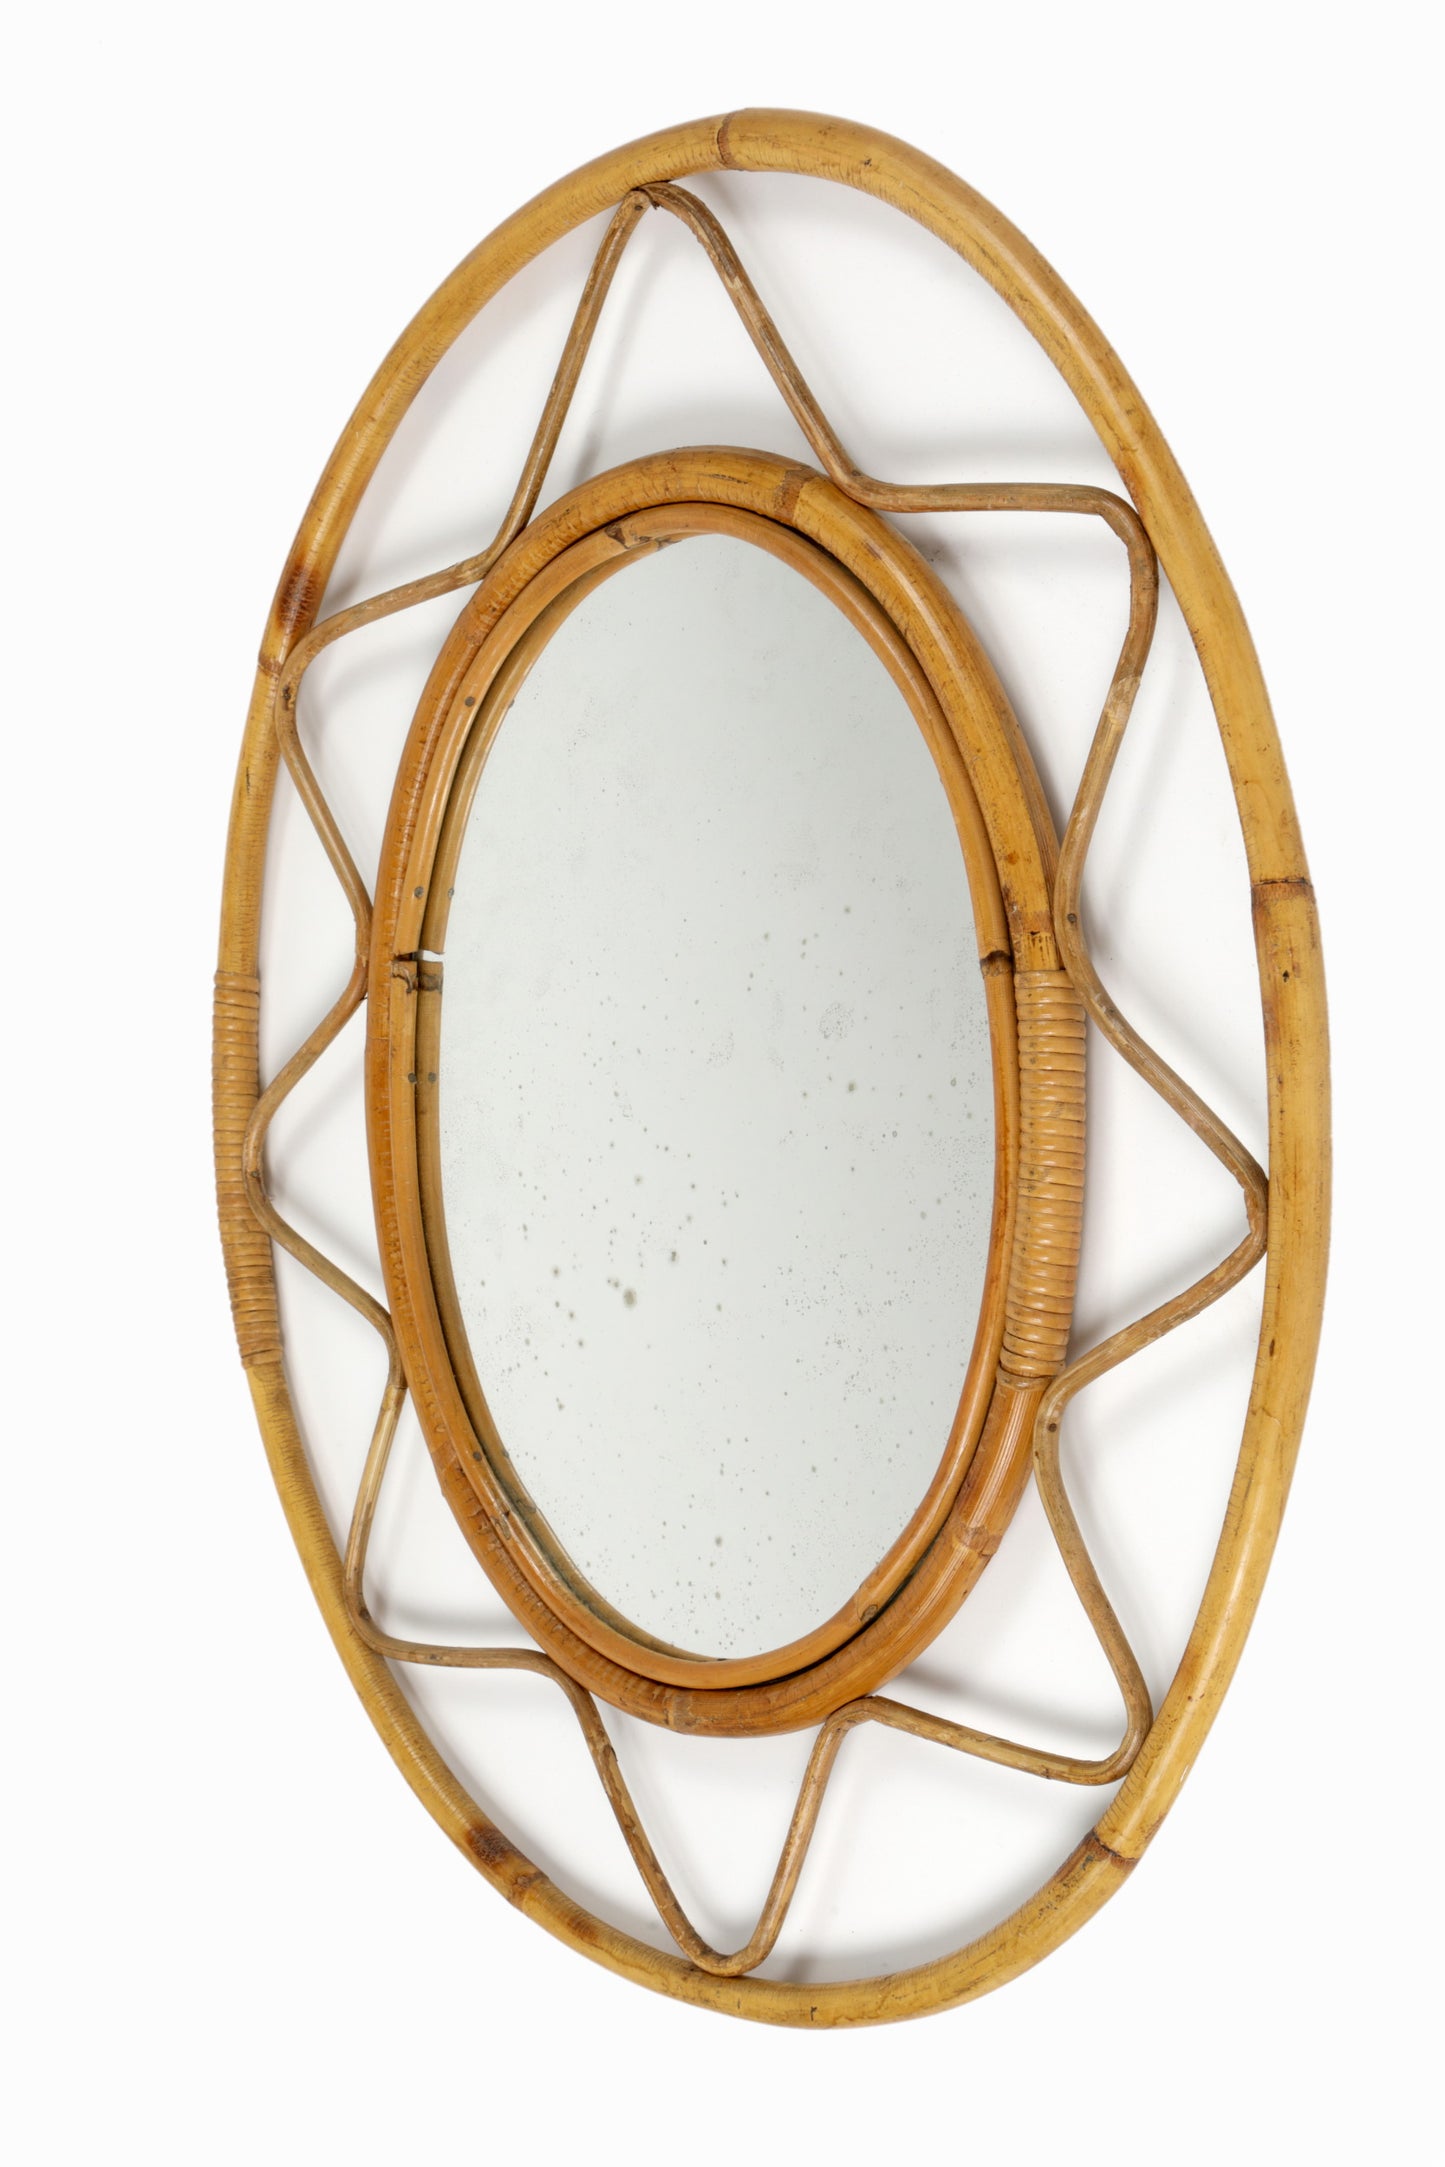 Specchio anni 60 bamboo